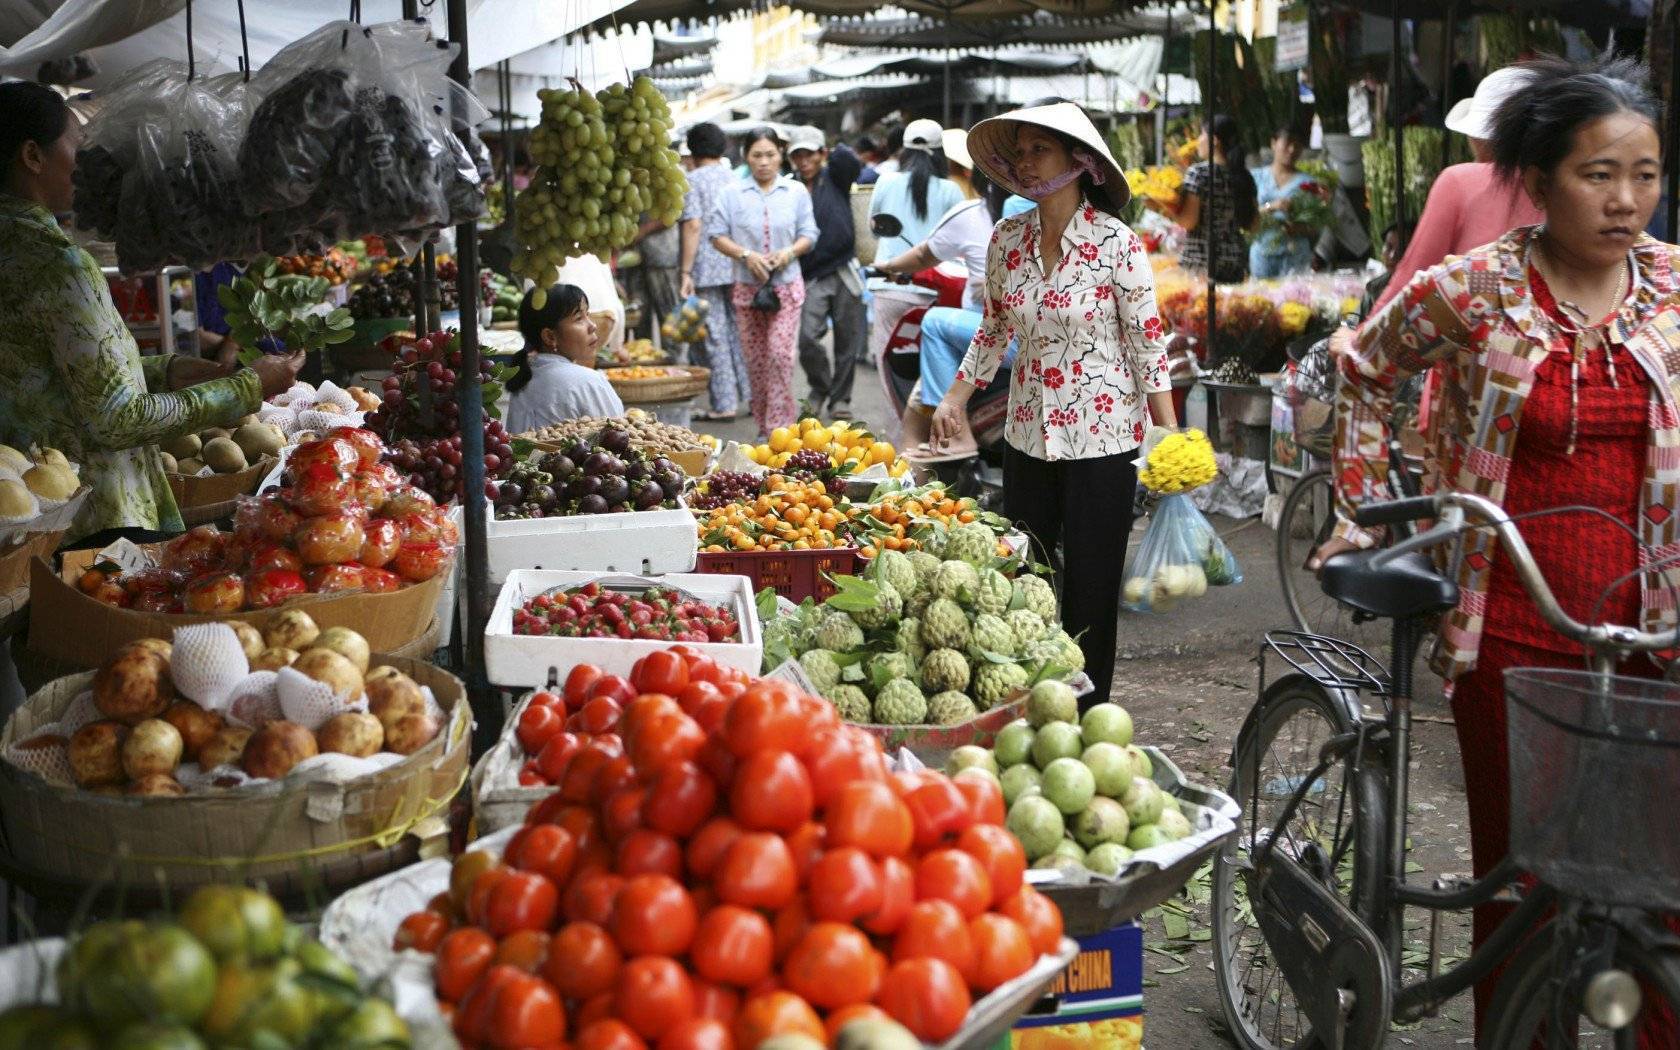 Национальная кухня вьетнама — что стоит попробовать? цены и блюда